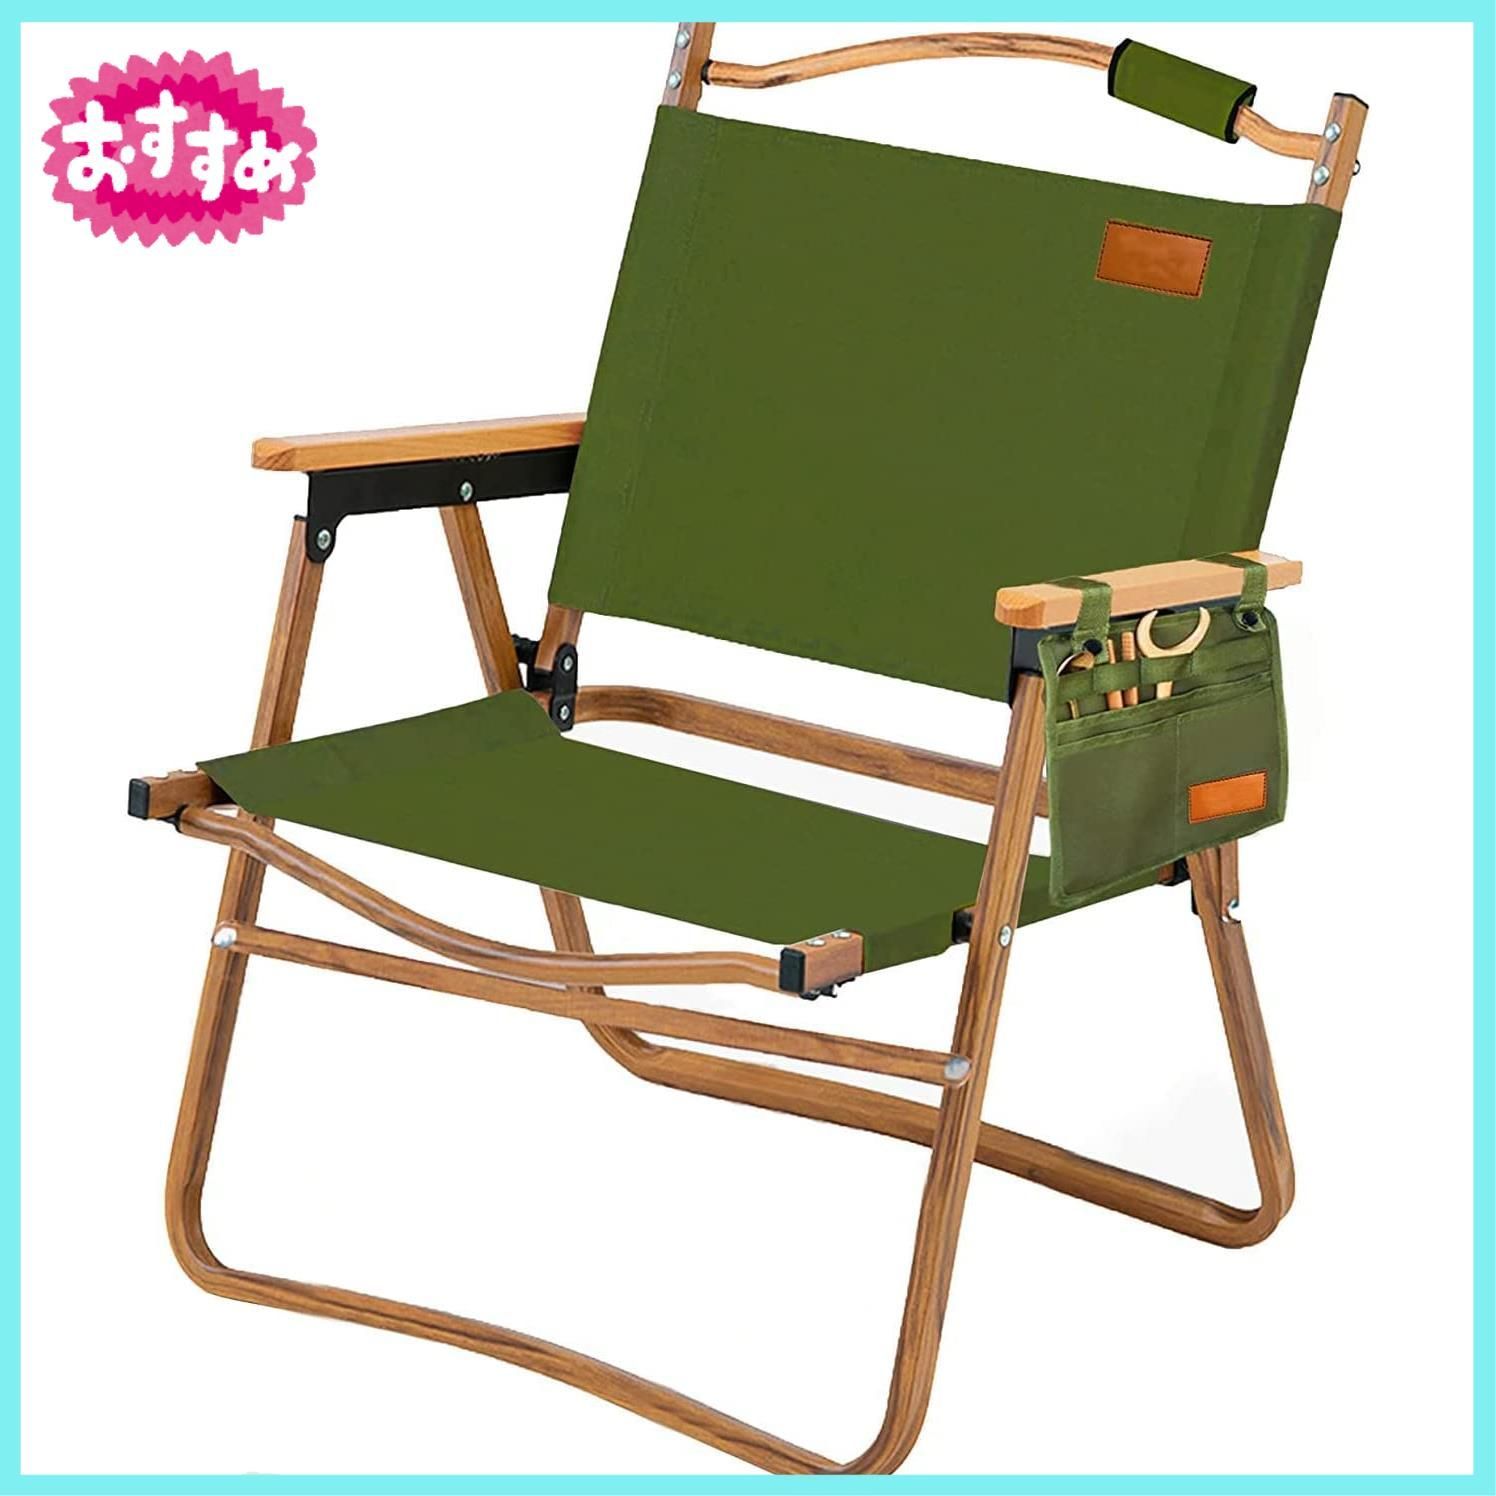 アウトドア チェア キャンプ 椅子 木目調フレーム フォールディングチェア 折りたたみ 軽量 コンパクト 携帯便利 キャンプチェア DY (緑色-C) 